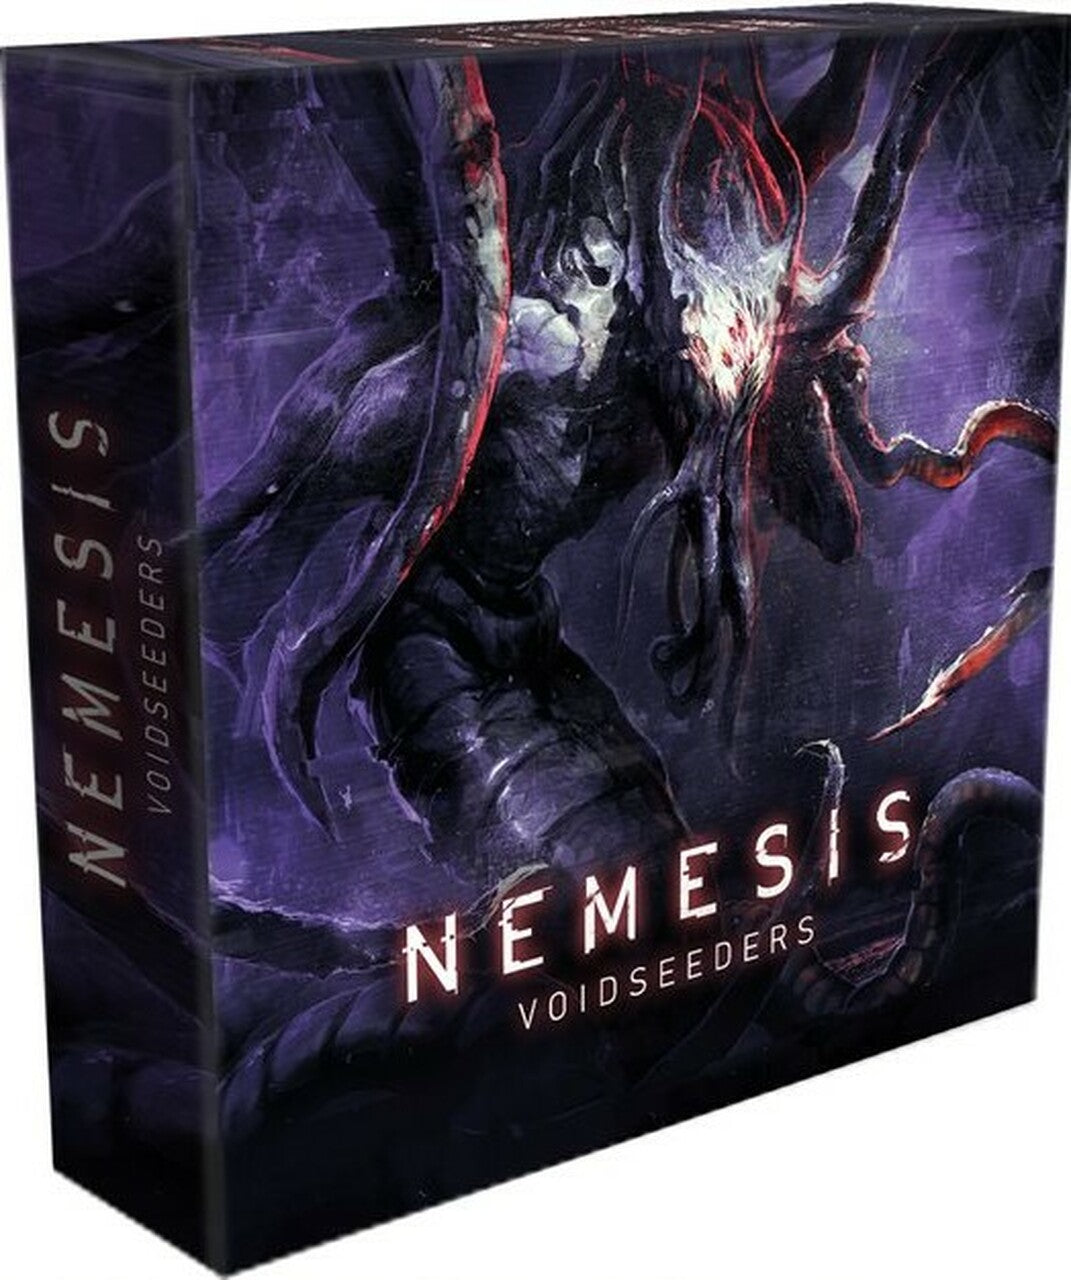 Nemesis - Voidseeders